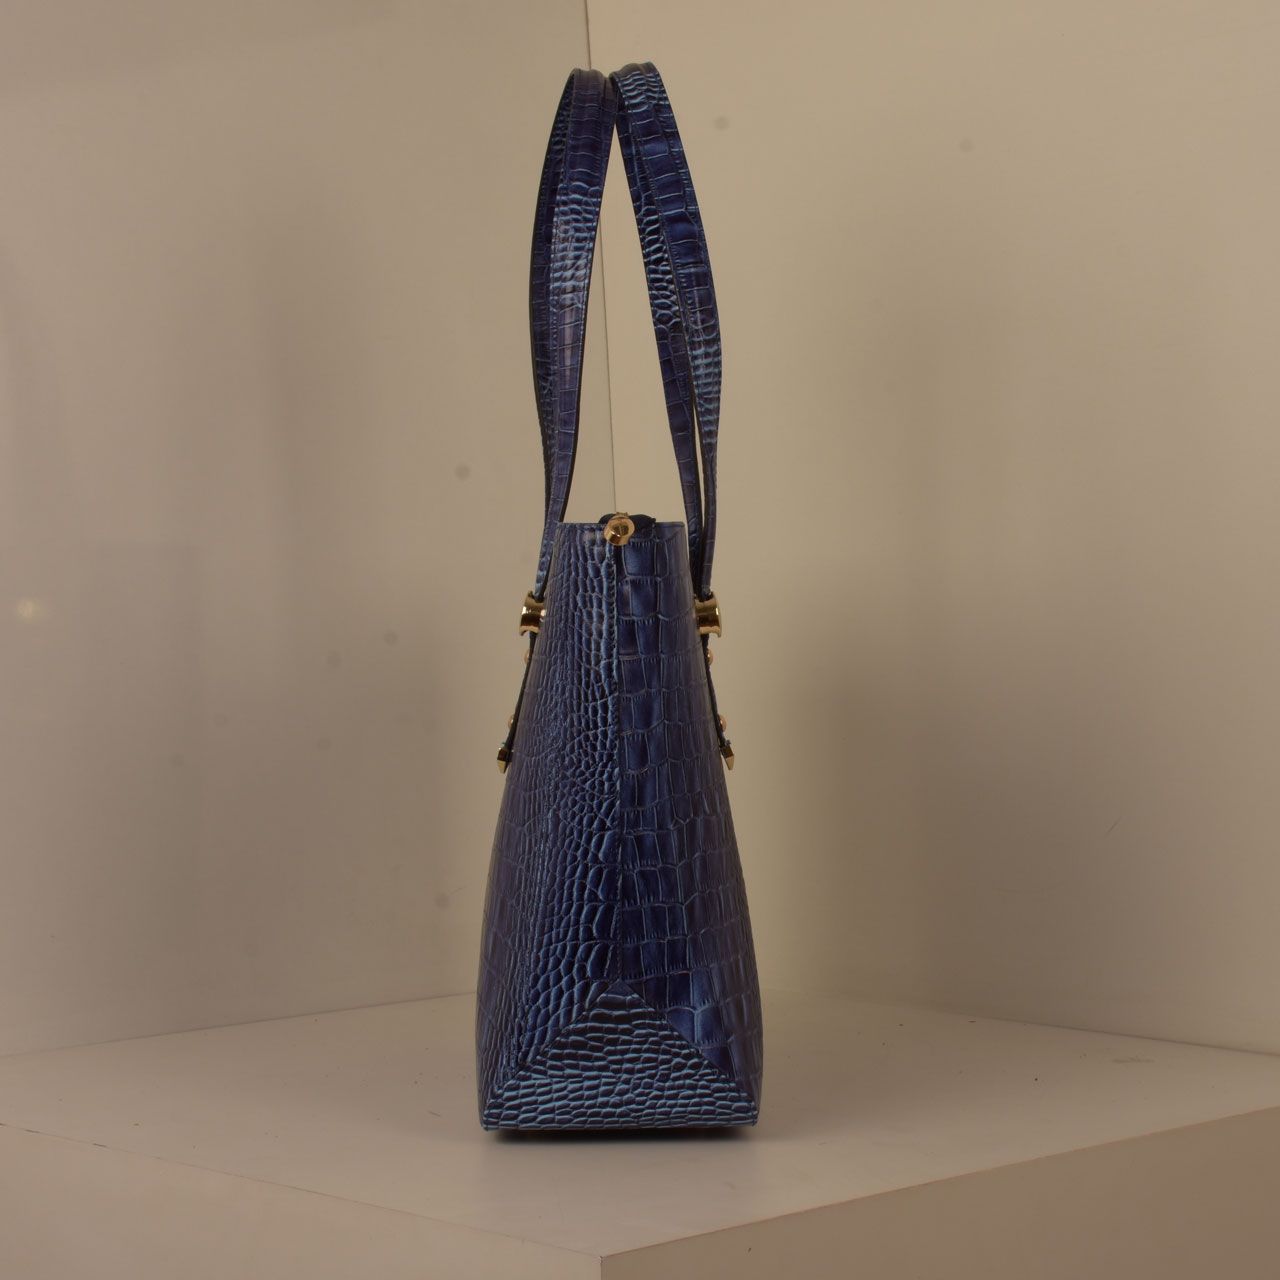 کیف دوشی زنانه پارینه چرم مدل v177-6 -  - 2